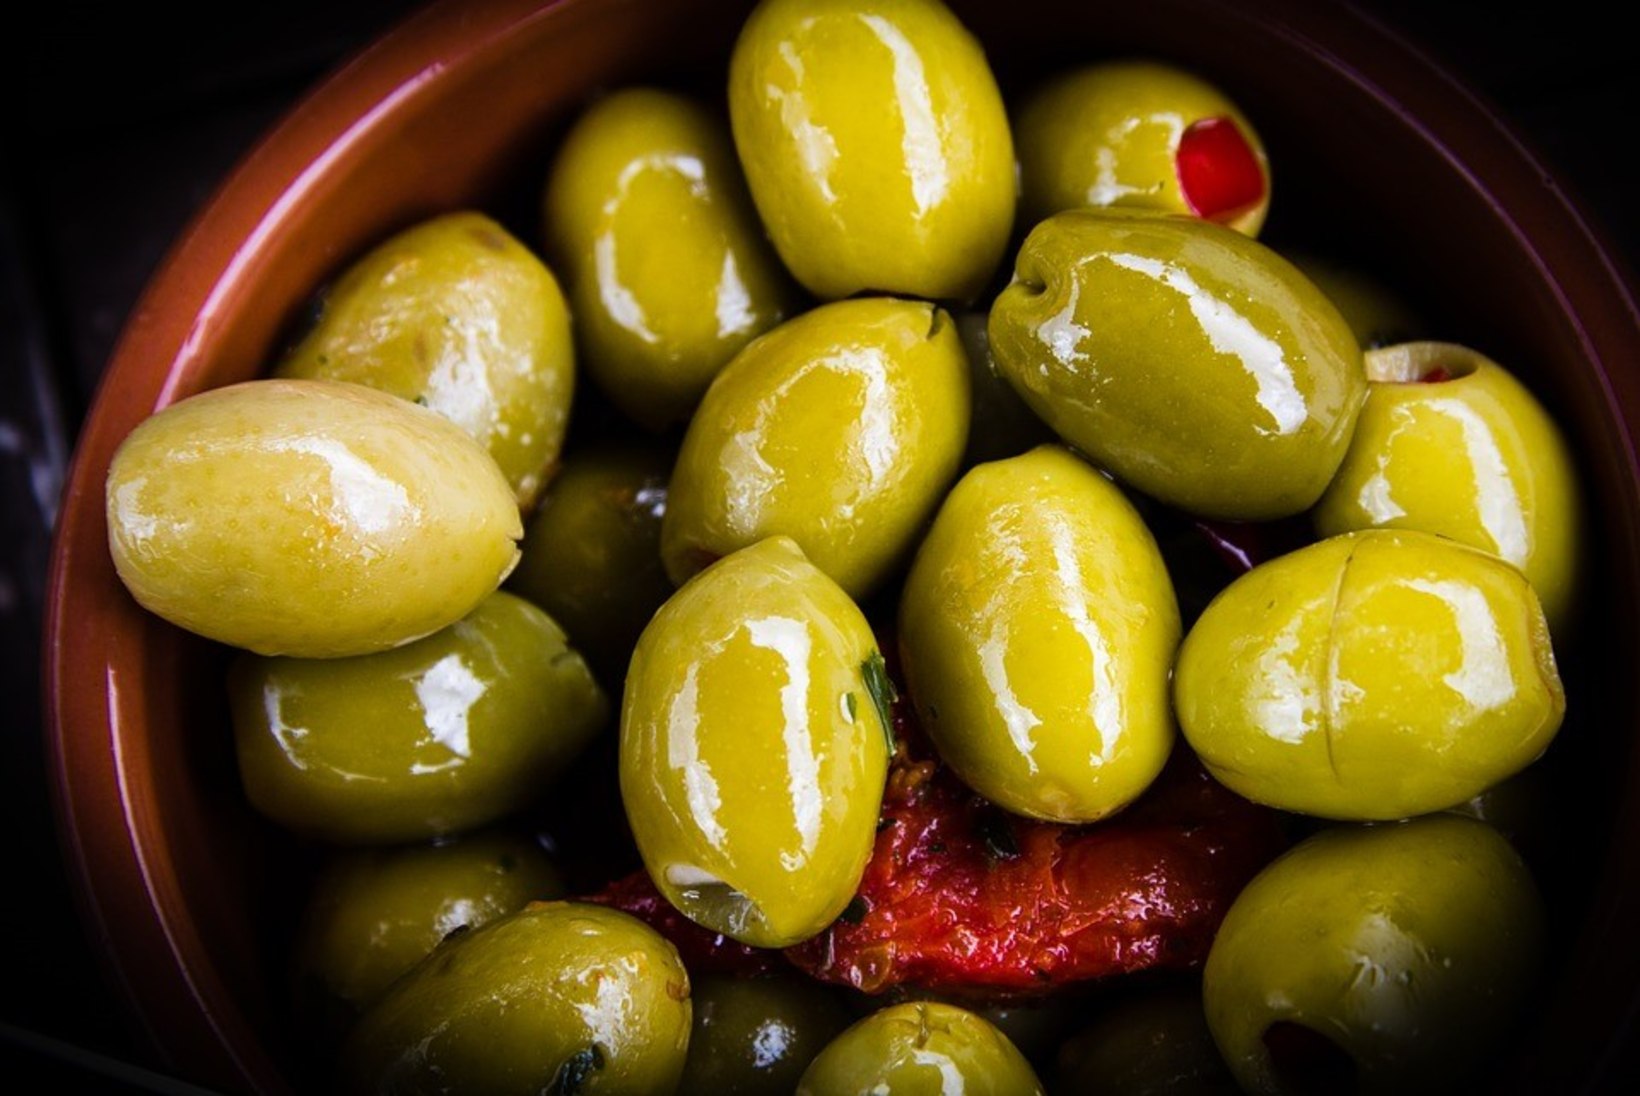 Hoia oliivid värskena nii!